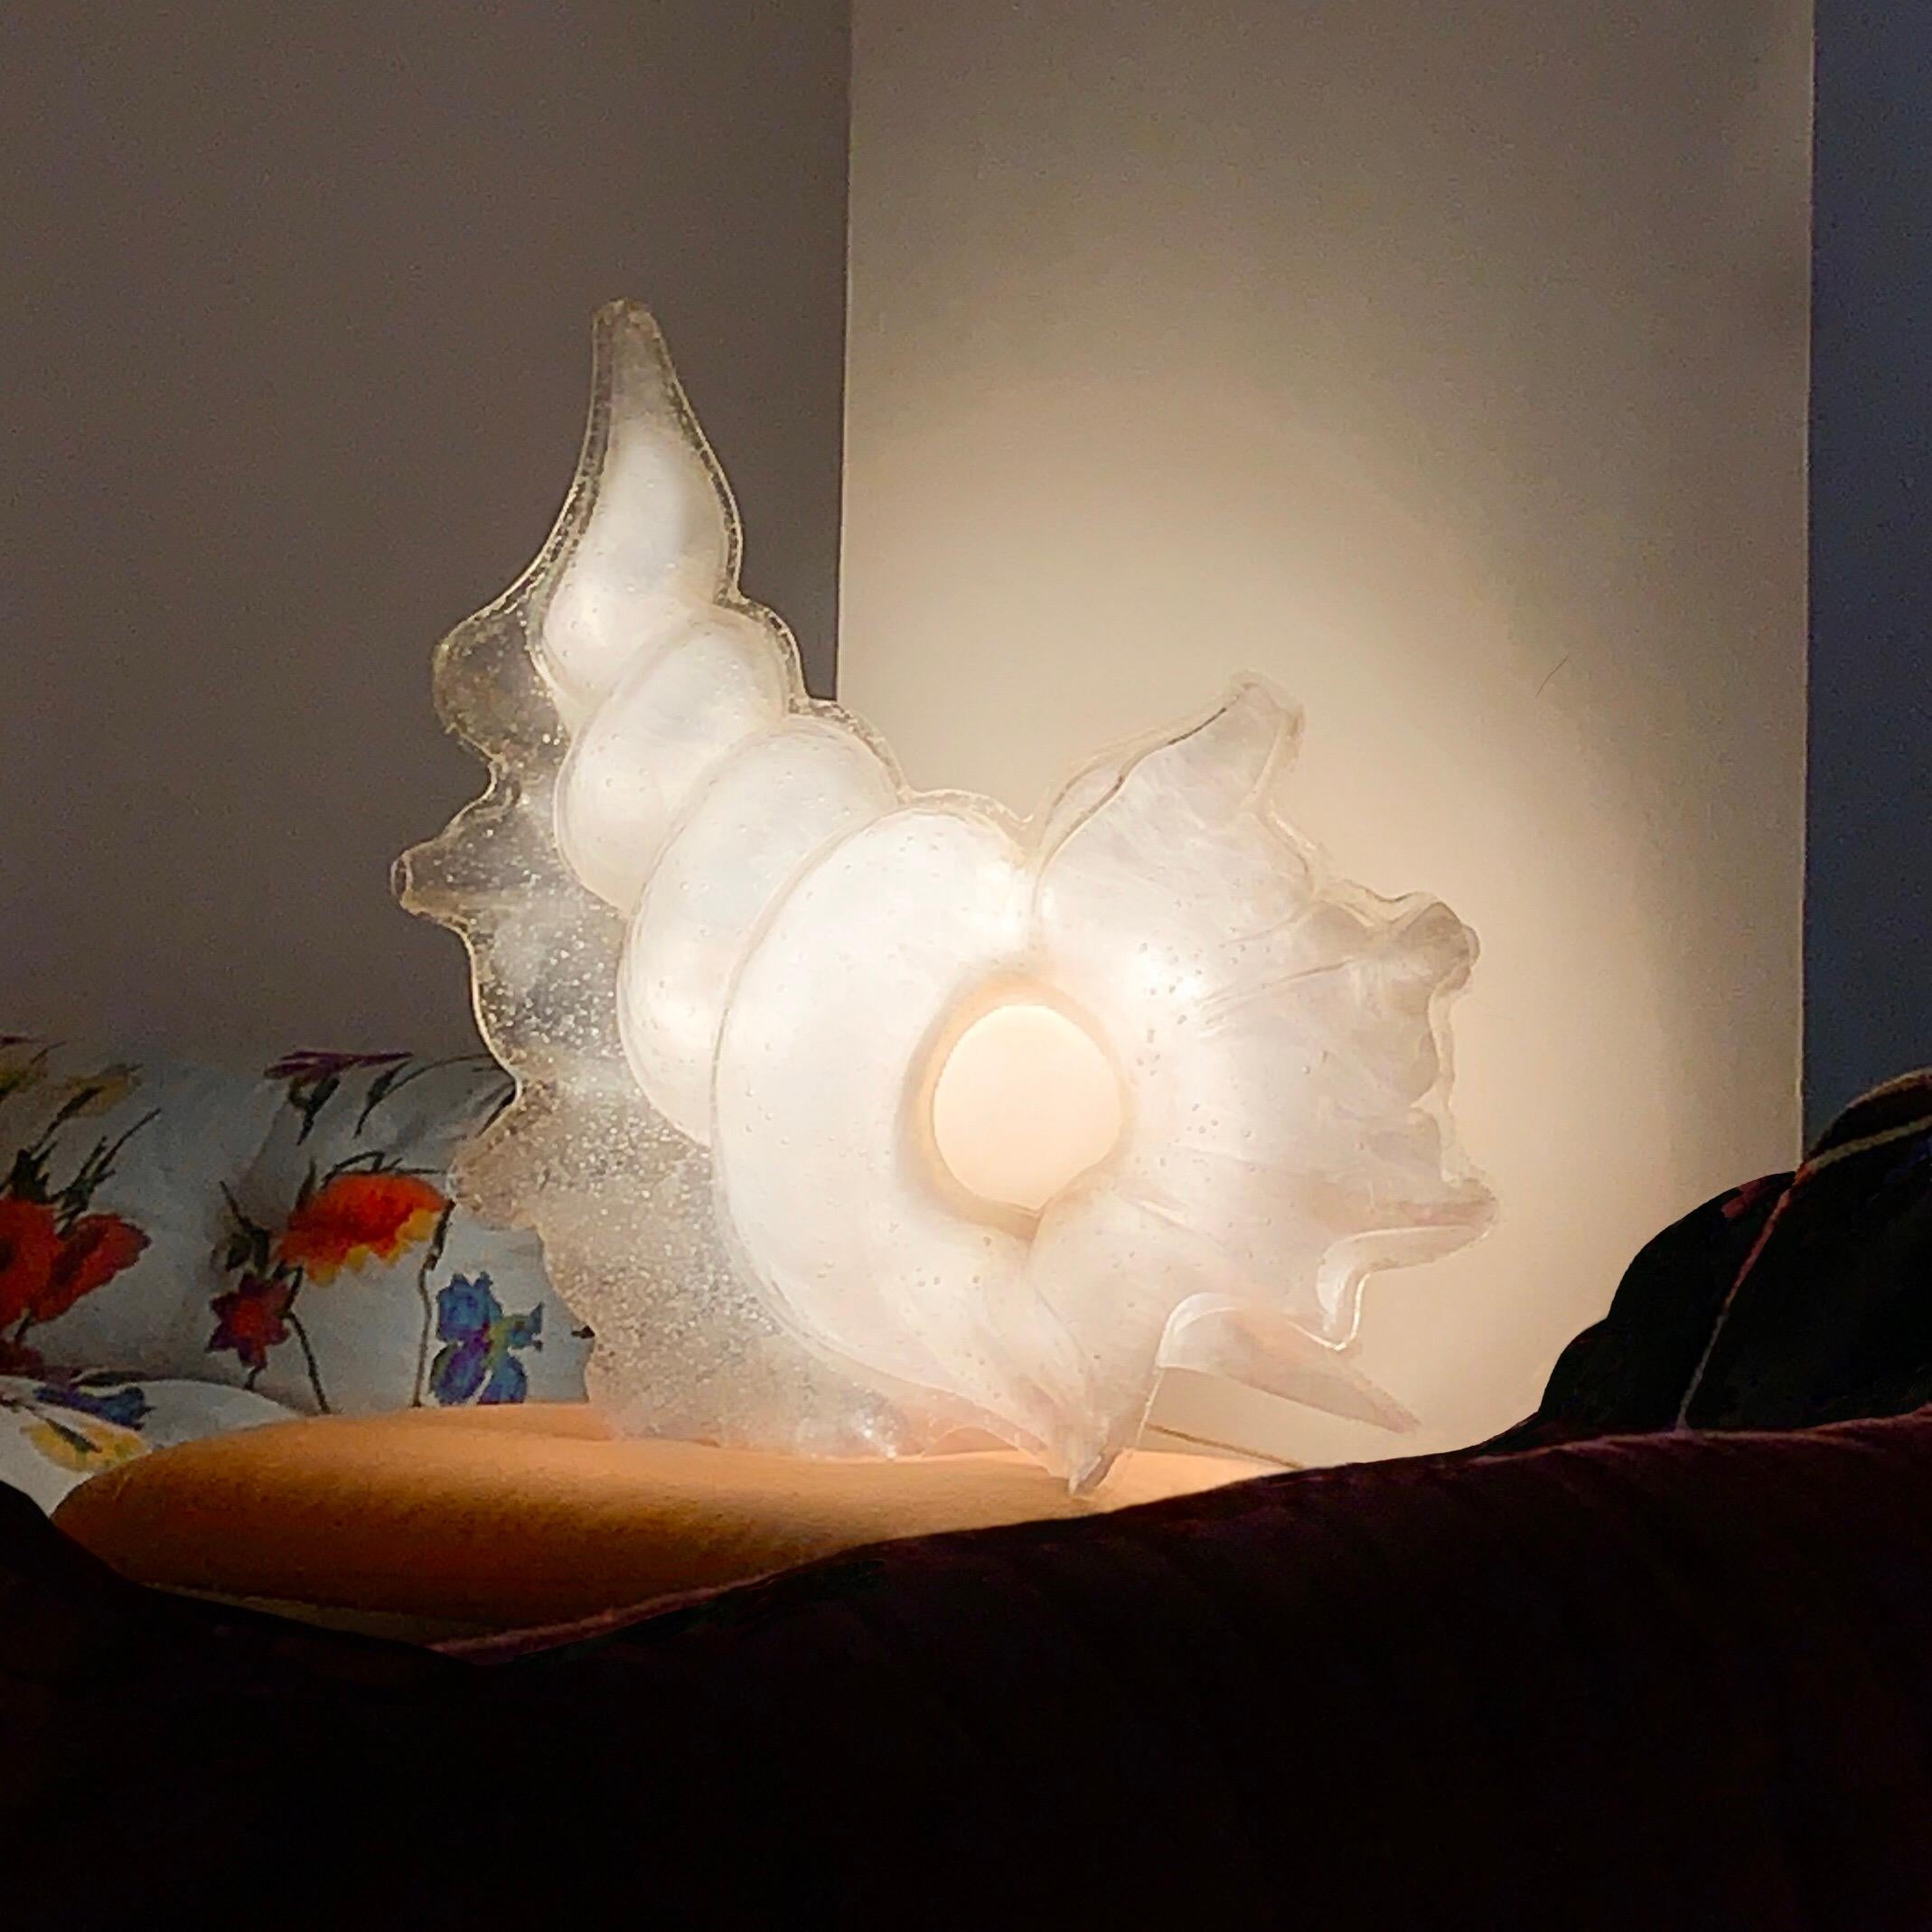 Roger Rougier Beleuchtete Lucite Figural Muschel Lampe, Mitte des Jahrhunderts Modern.  Seltene Rougier-Produktion aus der Mitte des Jahrhunderts.  Kann auf dem Boden oder auf dem Tisch verwendet werden.  Muschelschale, die von einer geschichteten